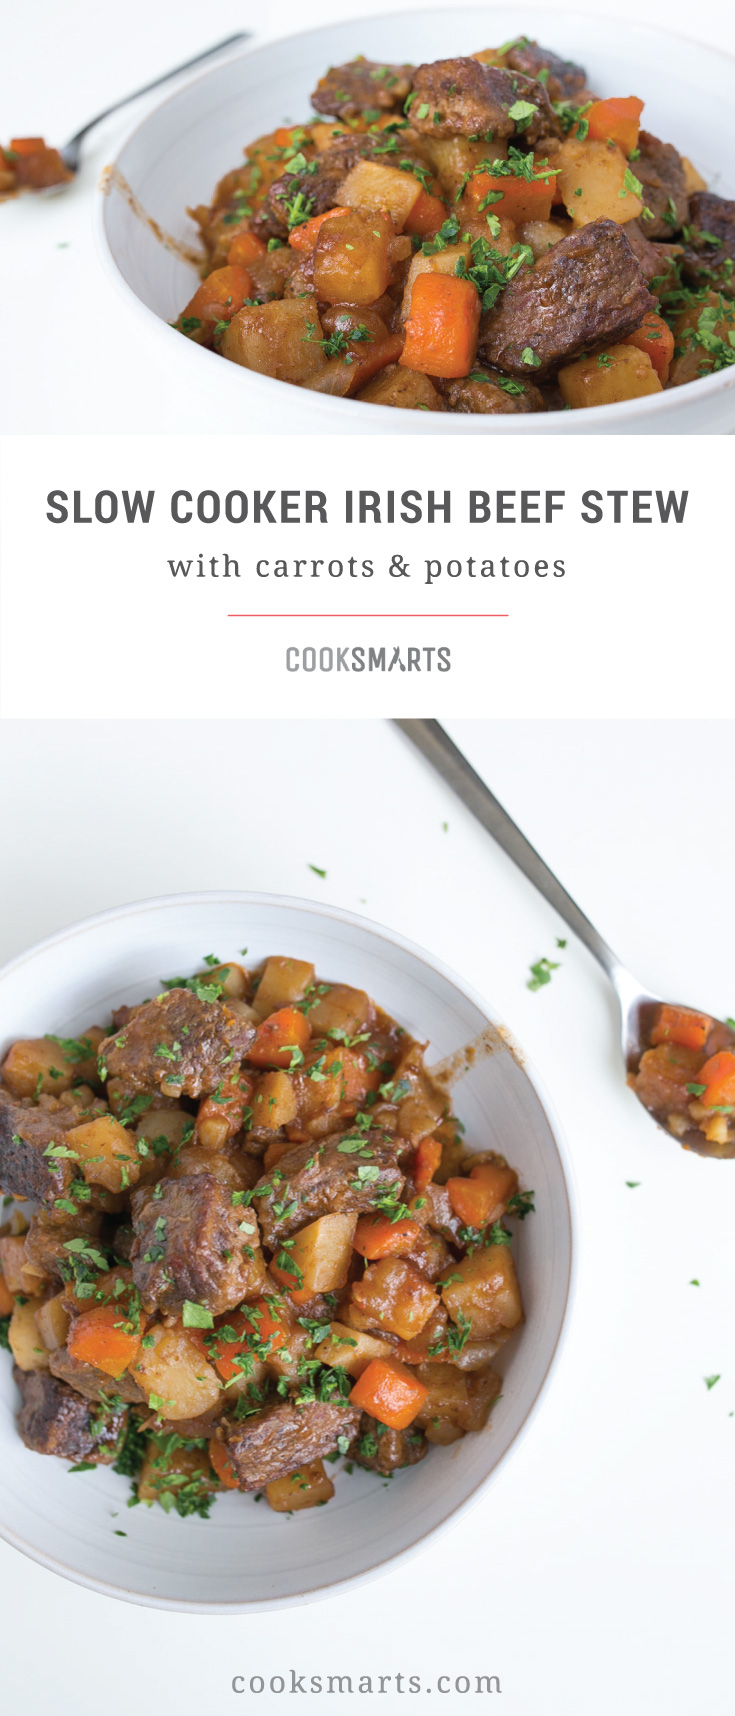 Cook Smarts Recipe: Slow Cooker Irish Beef Stew